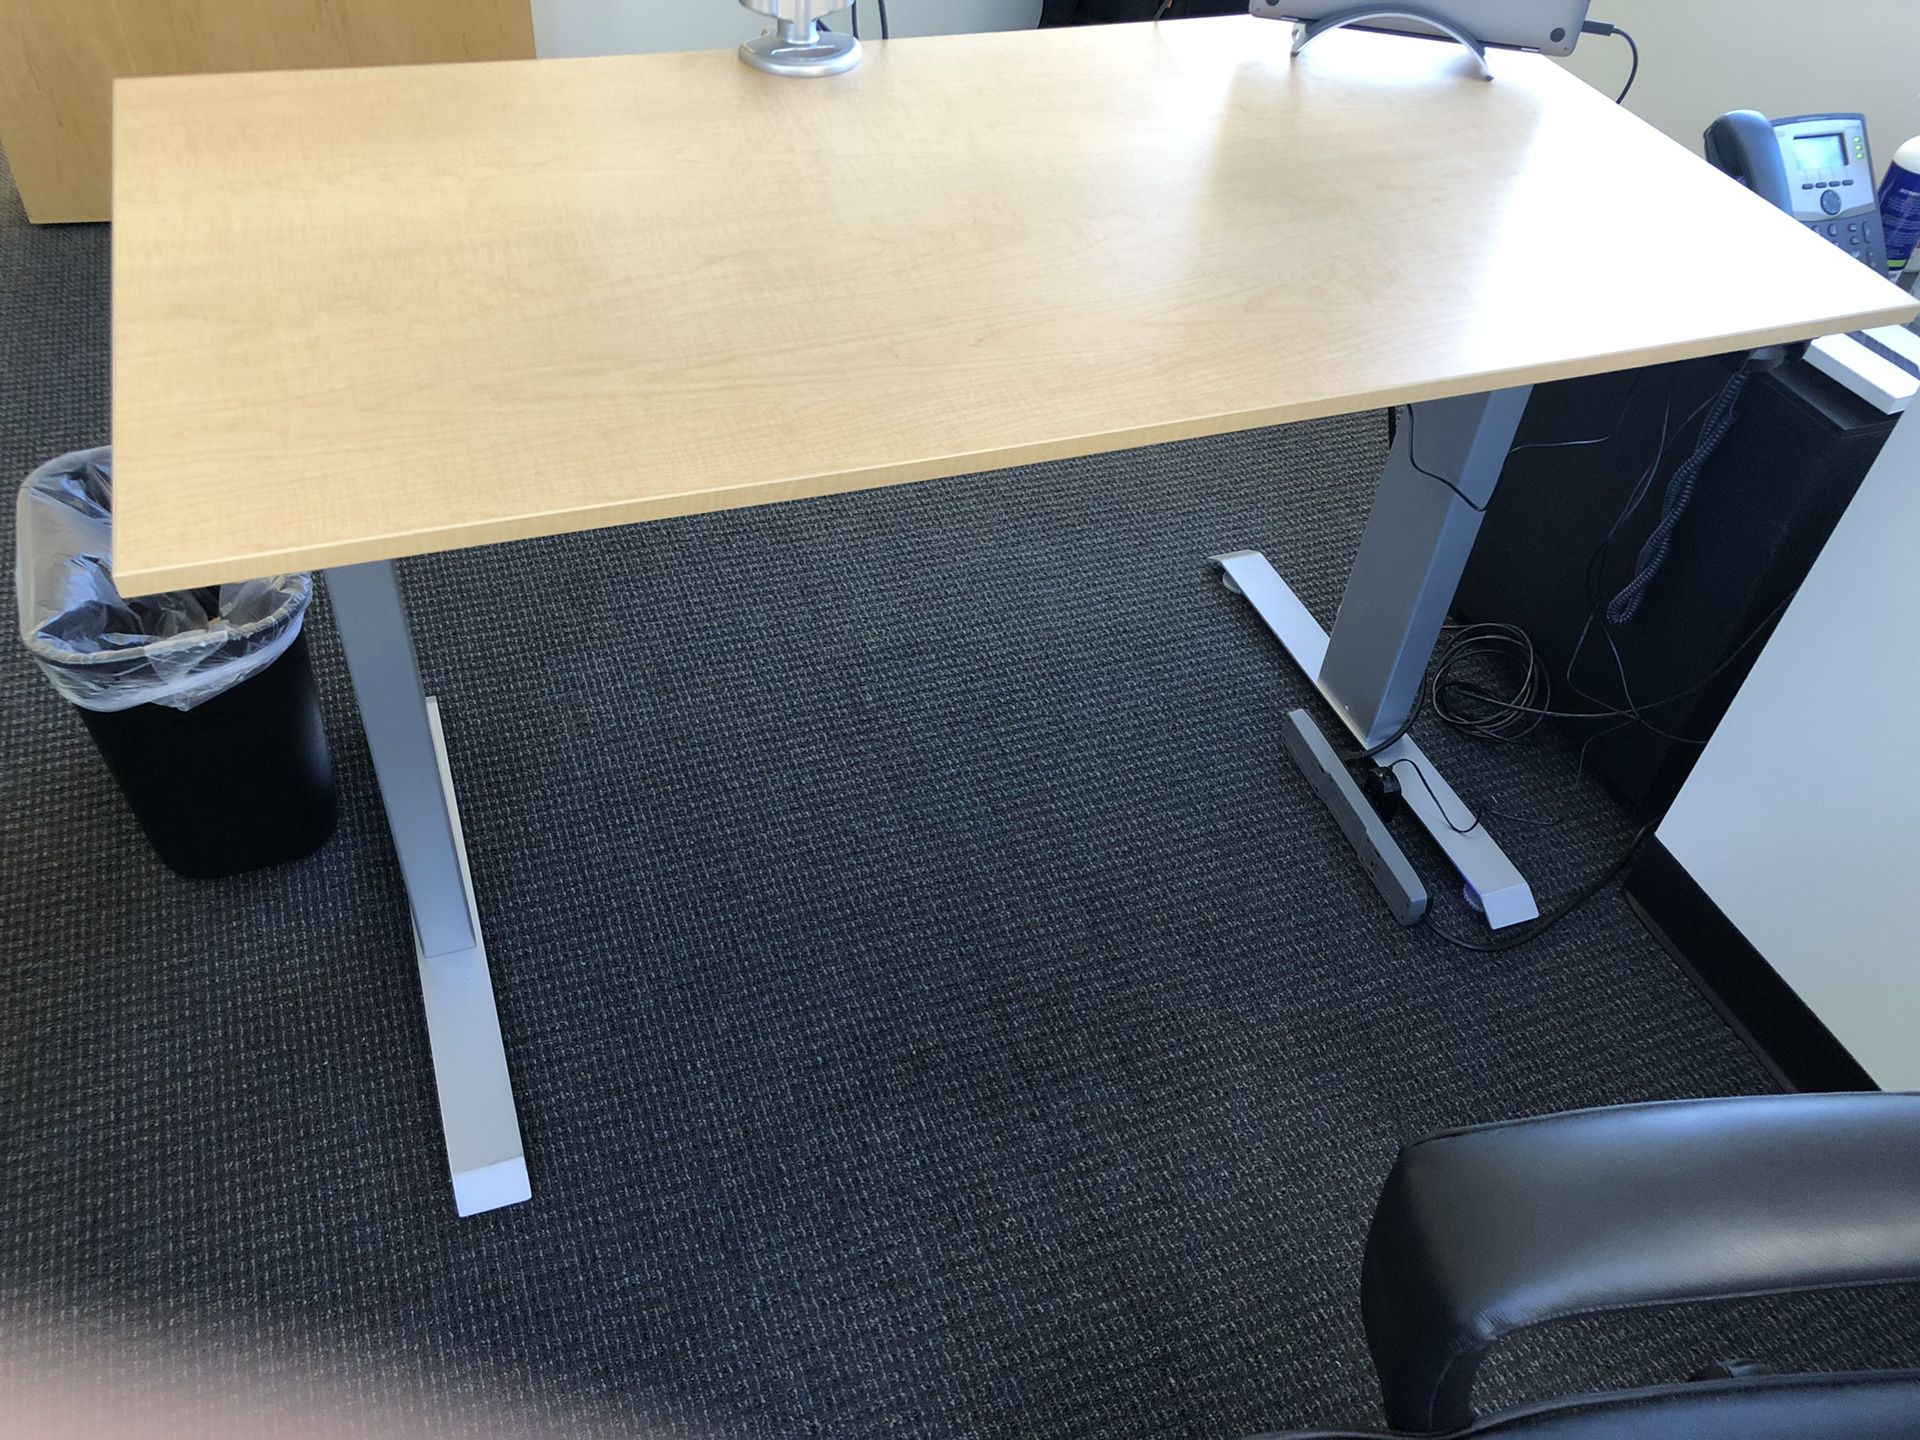 Multi Table motorized adjustable height desk.